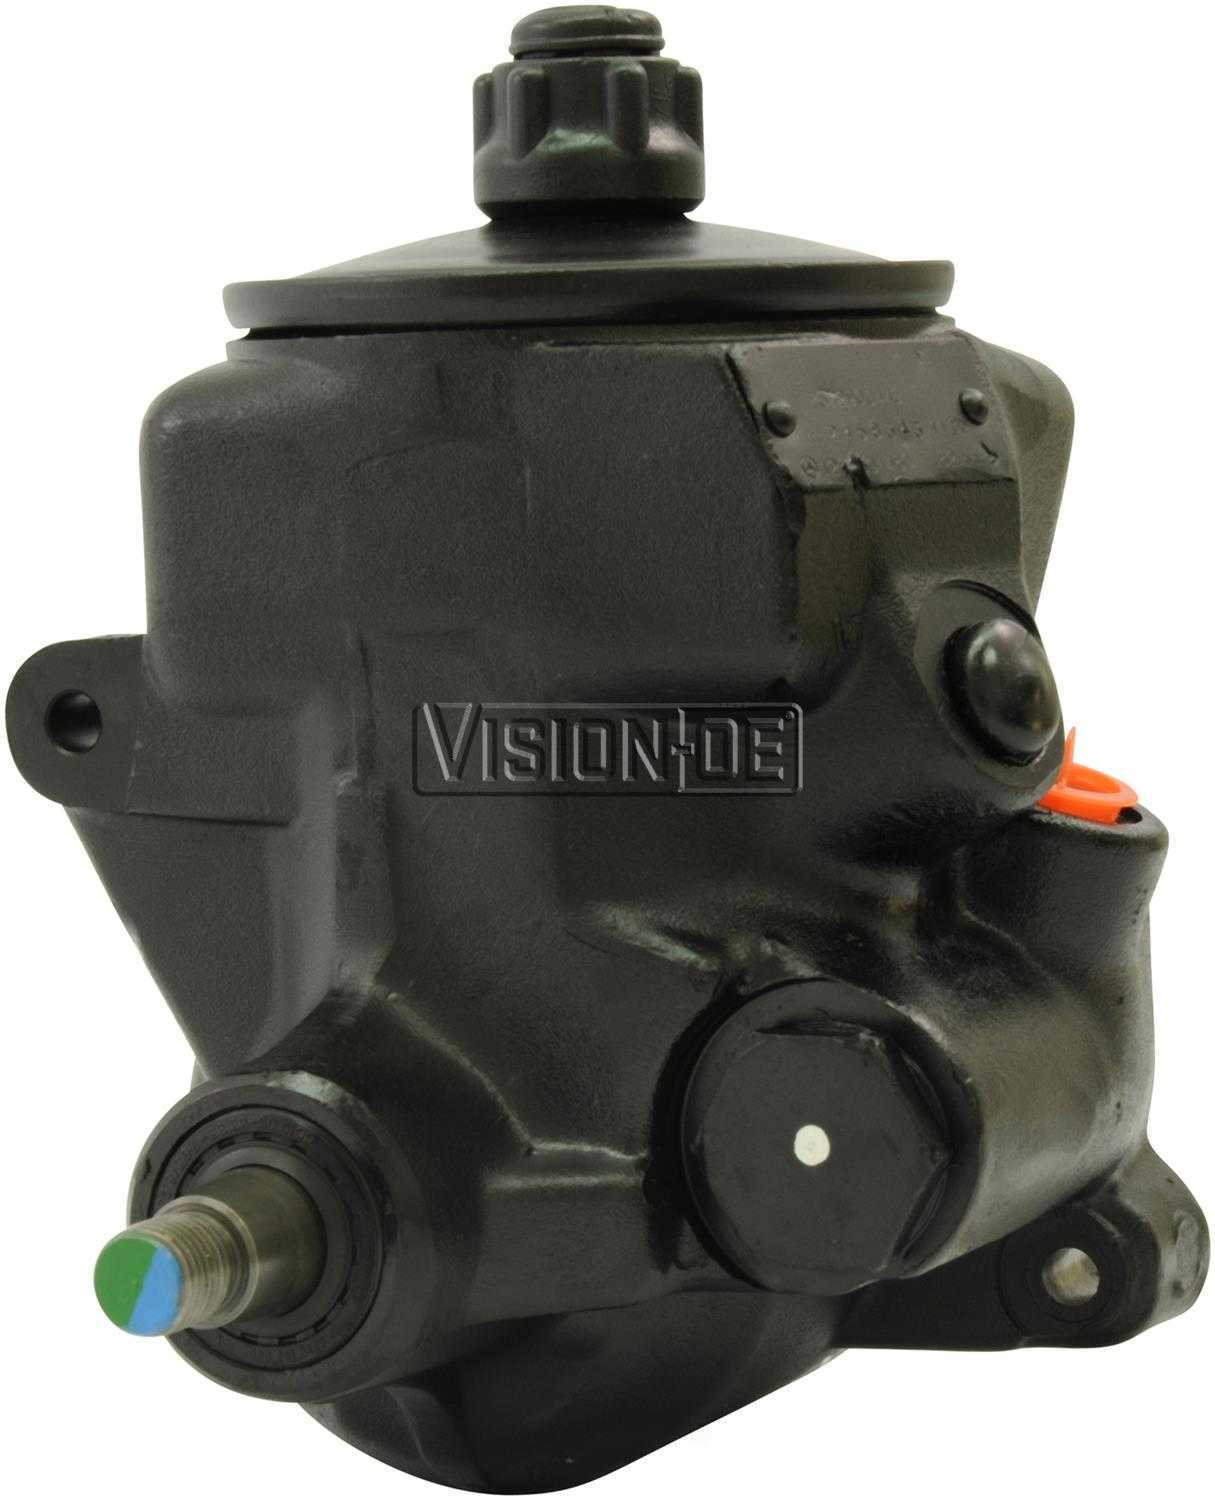 VISION-OE - Reman Power Steering Pump - VOE 990-0421